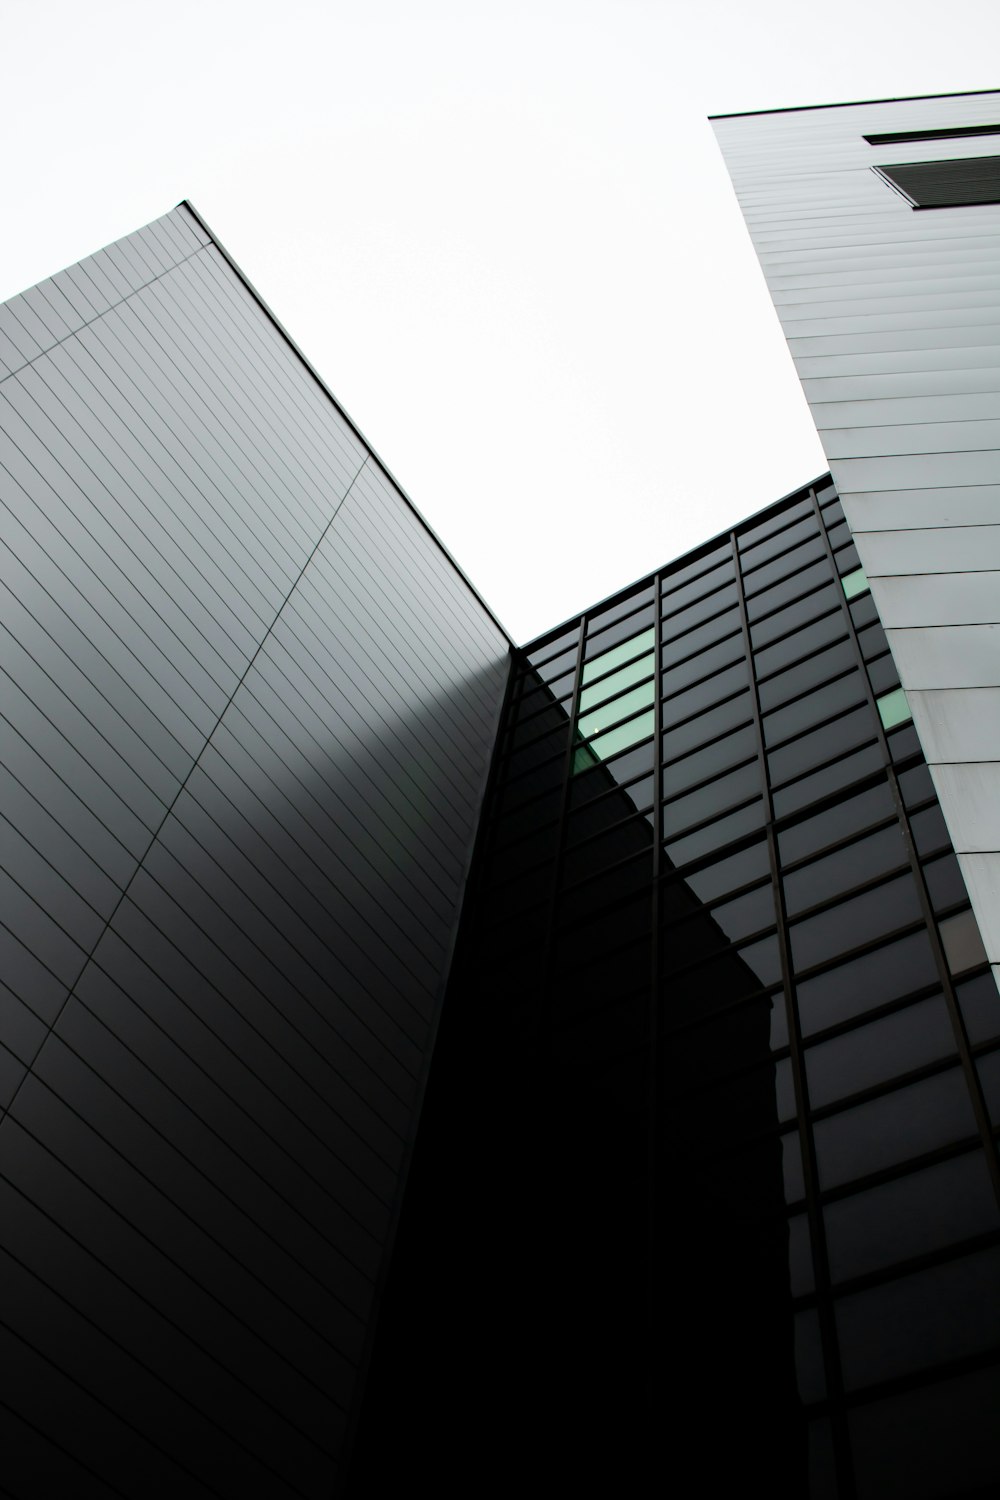 Fotografía de ángulo bajo de edificios con paredes de vidrio transparente